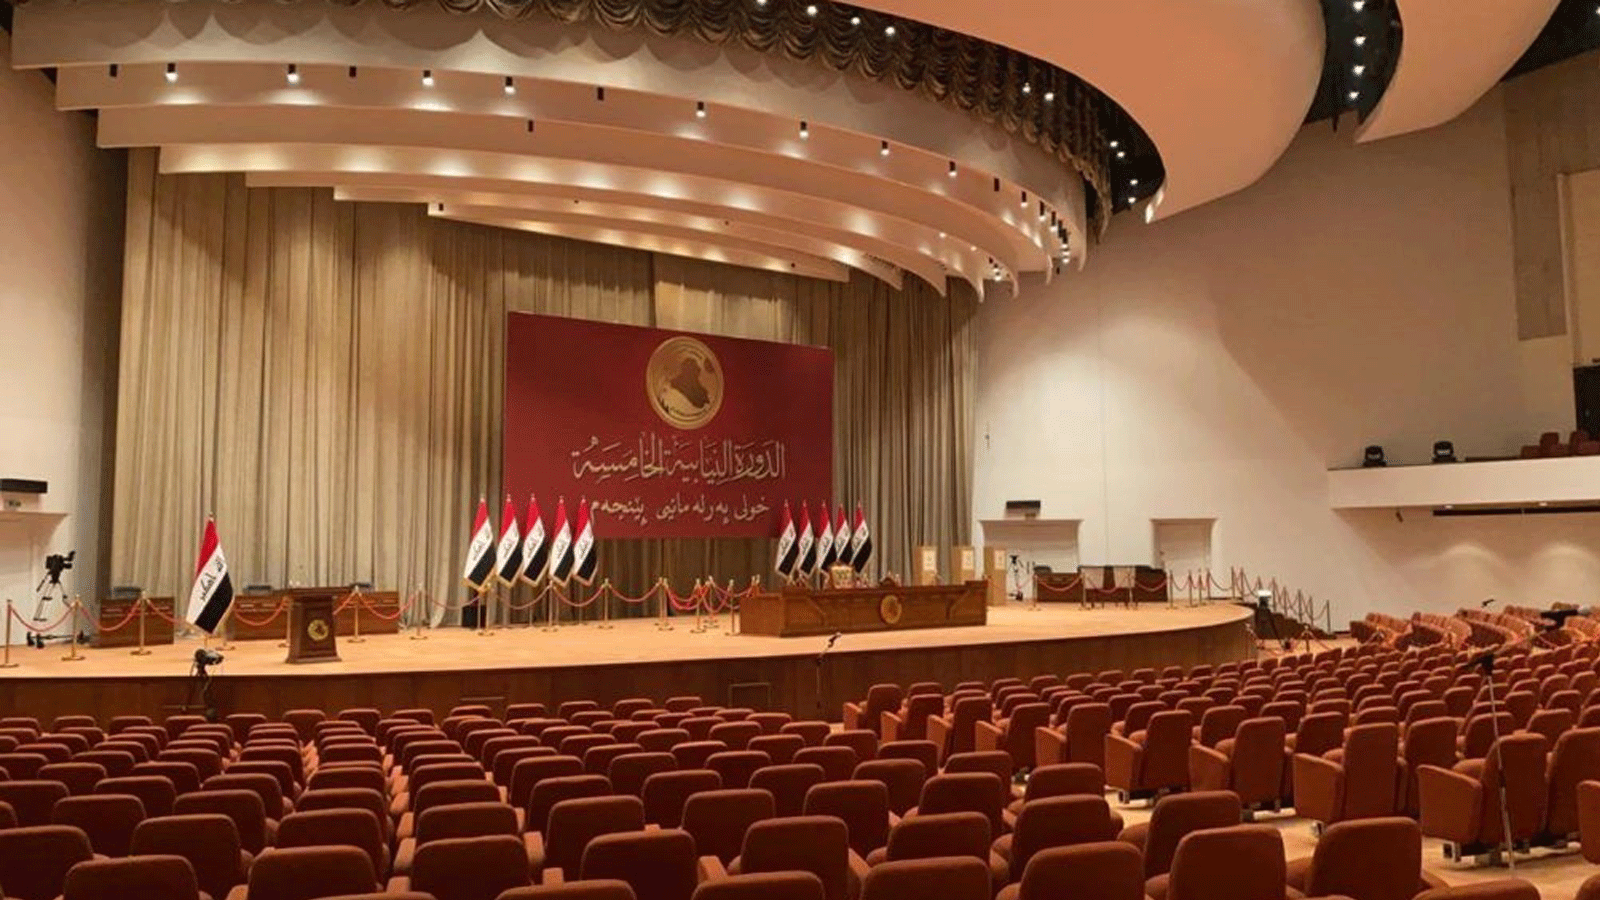 البرلمان العراقي الجديد ينتظر نوابه بعد تأجيل جلسته الاولى التي كانت مقررة اليوم الاحد 9 كانون الثاني/ يناير 2022 بسبب خلافات كتله (تويتر)